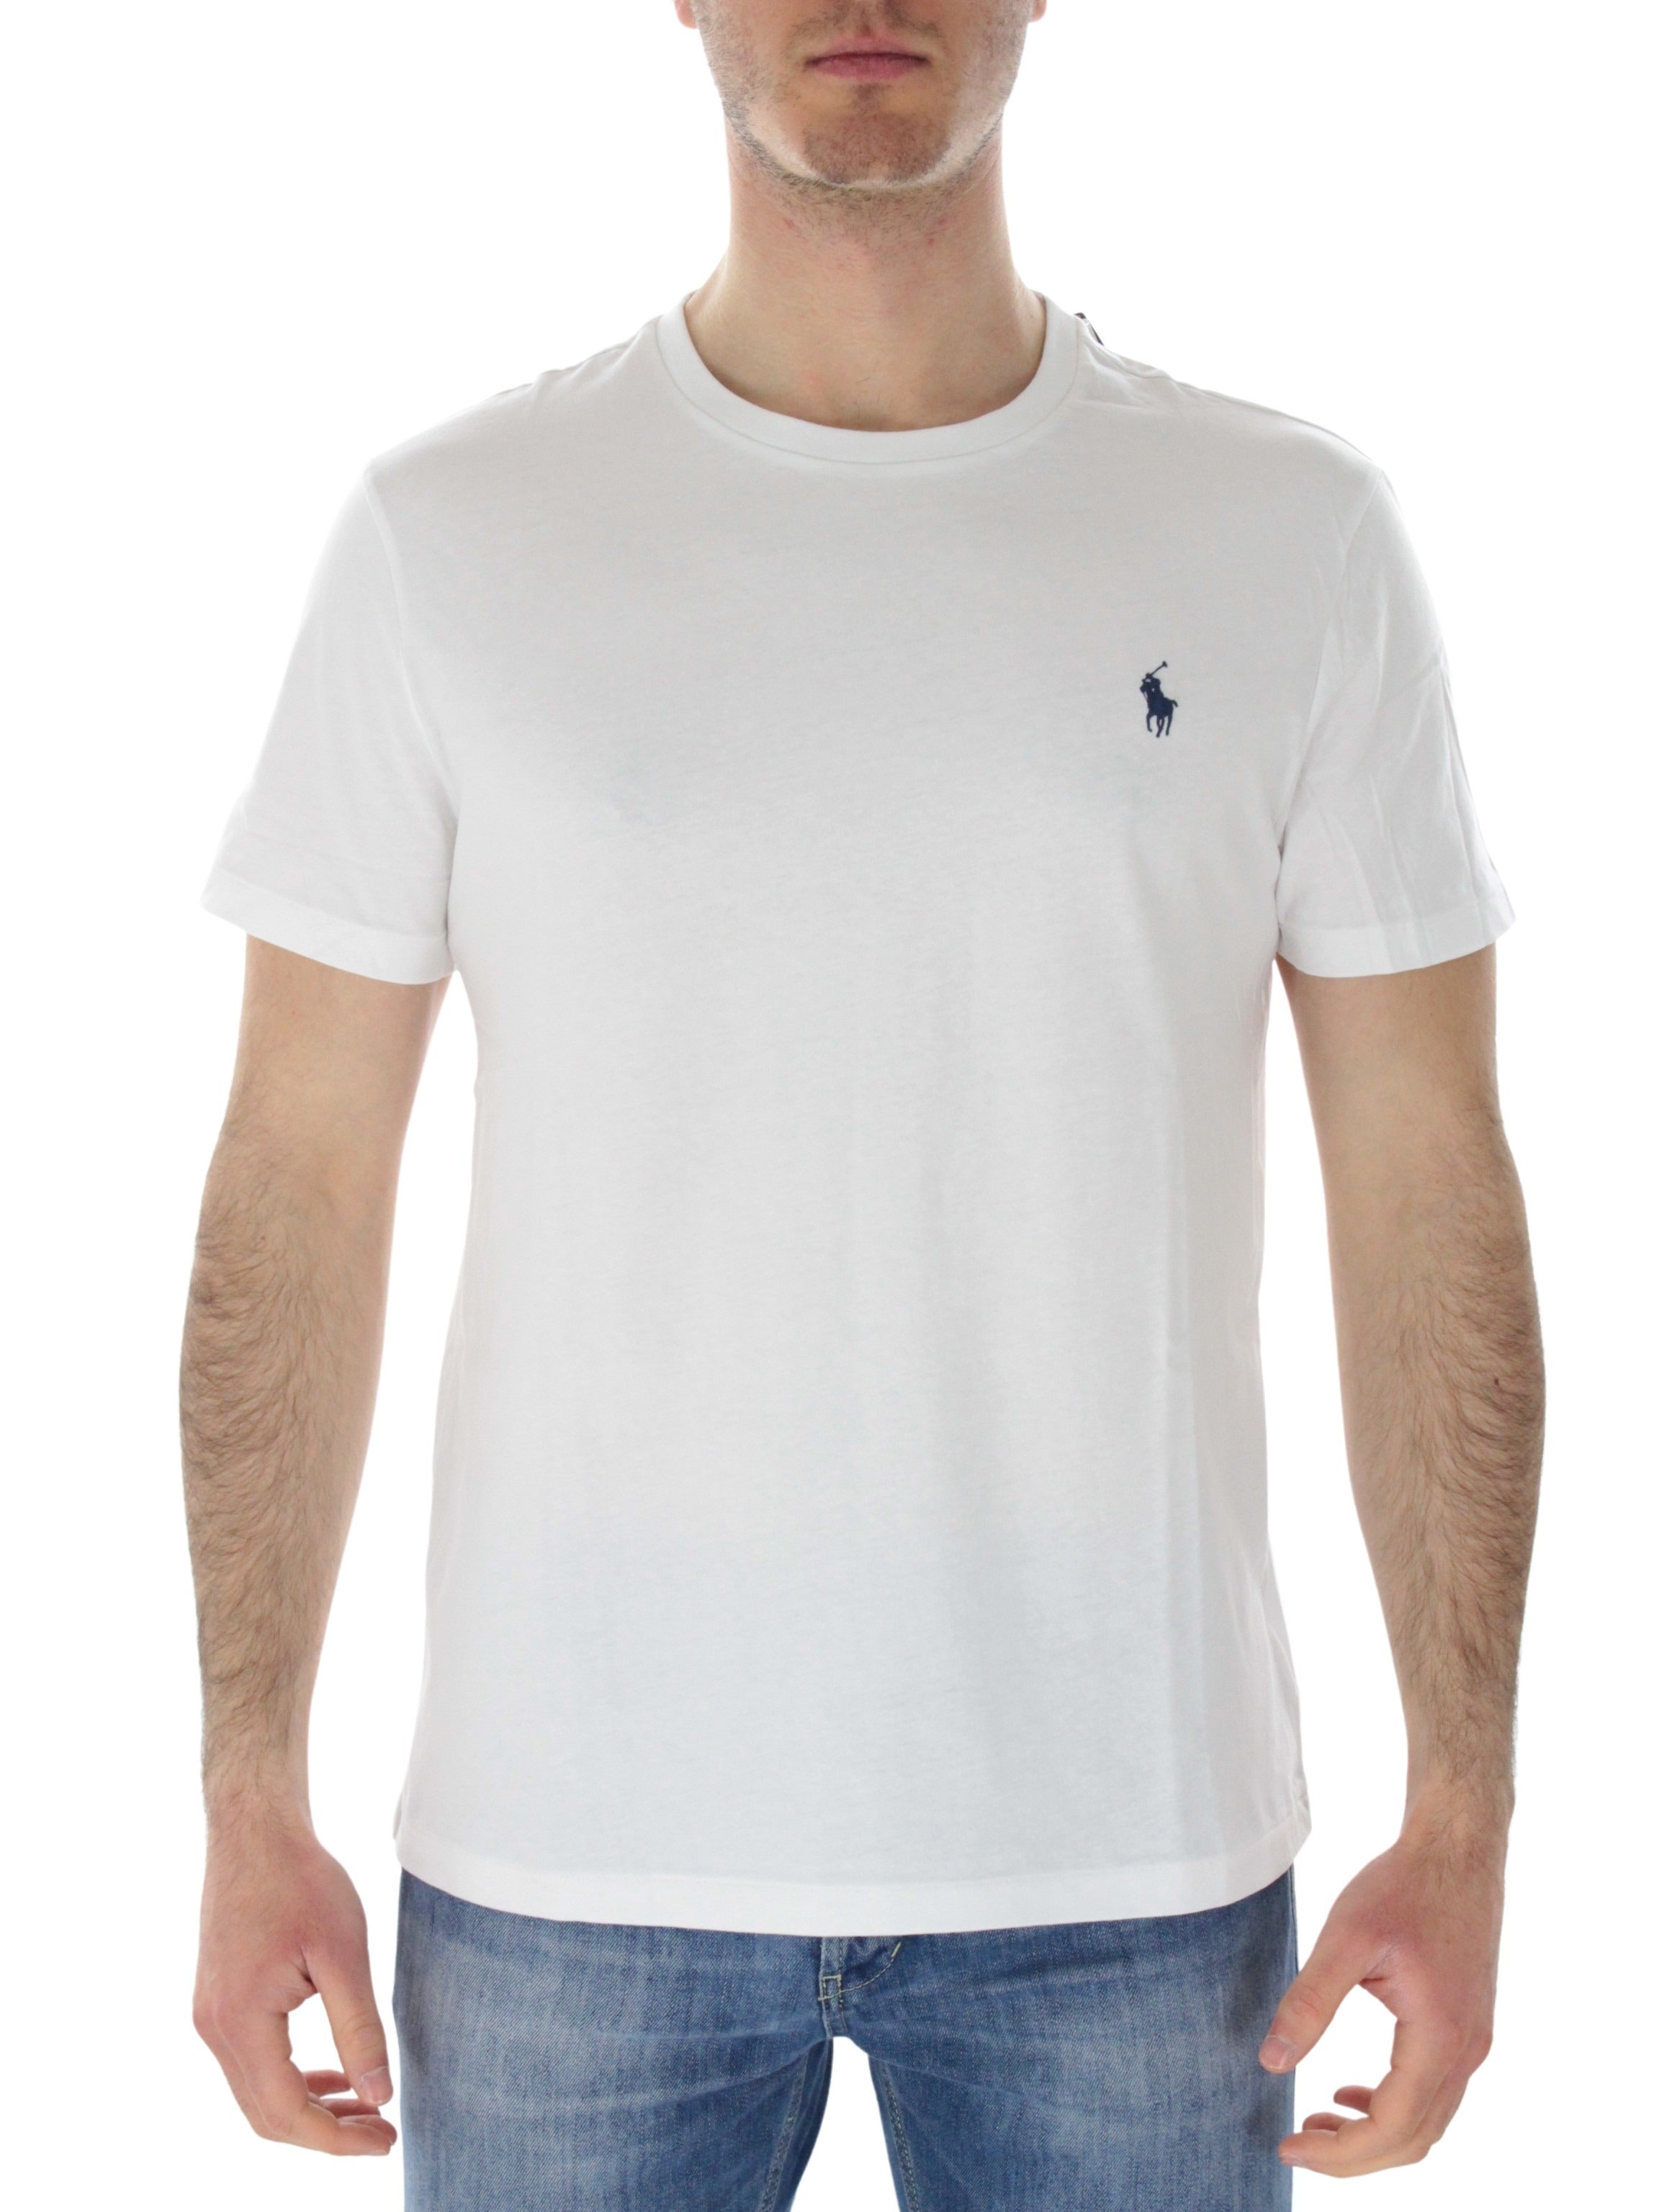 Custom Slim 7106807850 white t-shirt